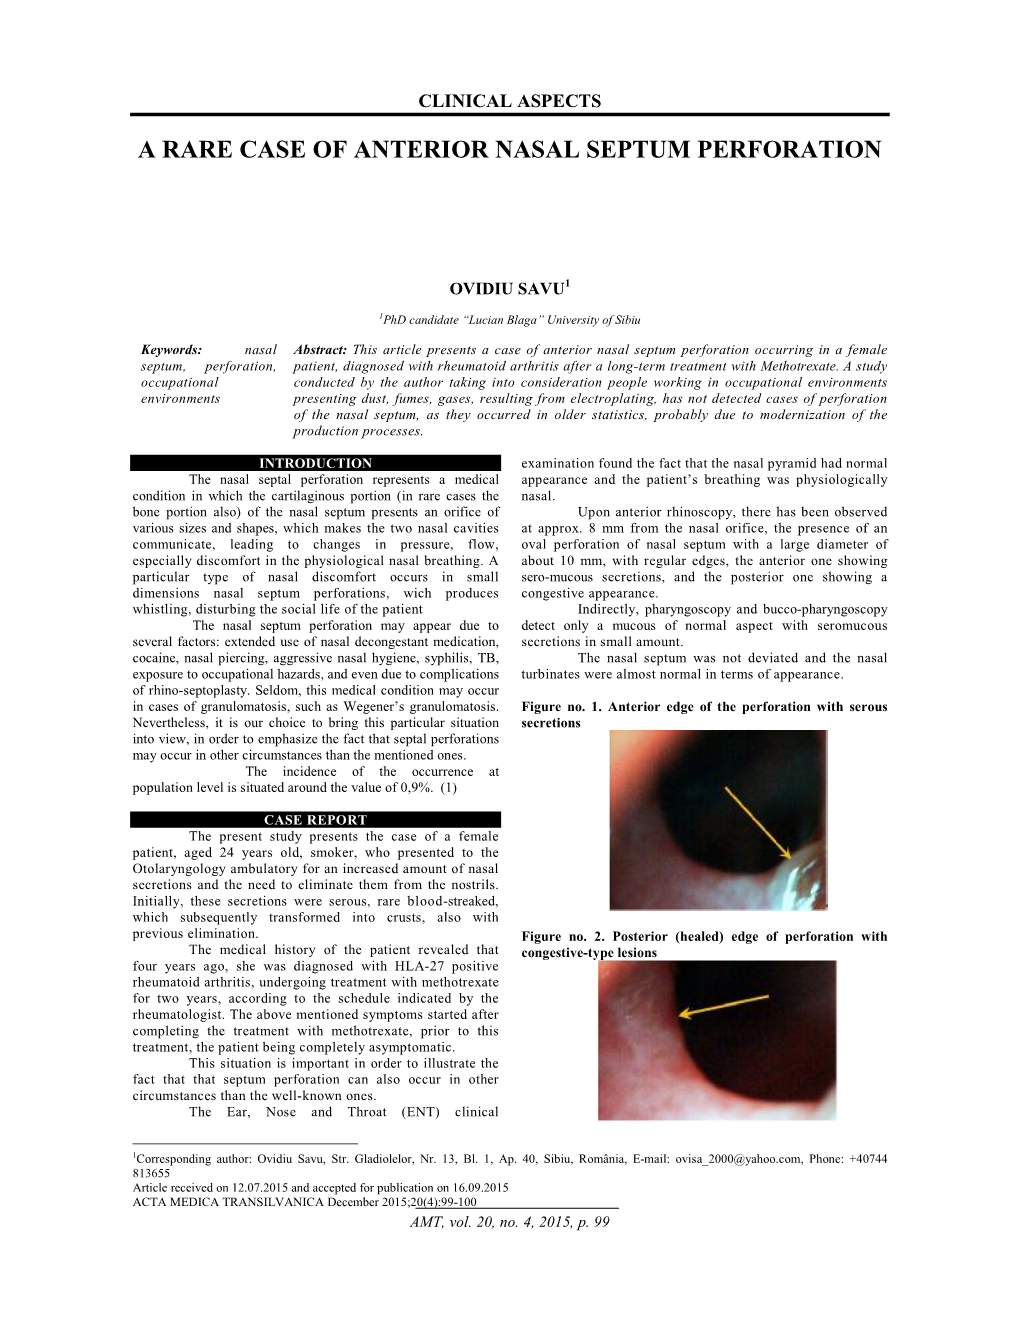 A Rare Case of Anterior Nasal Septum Perforation